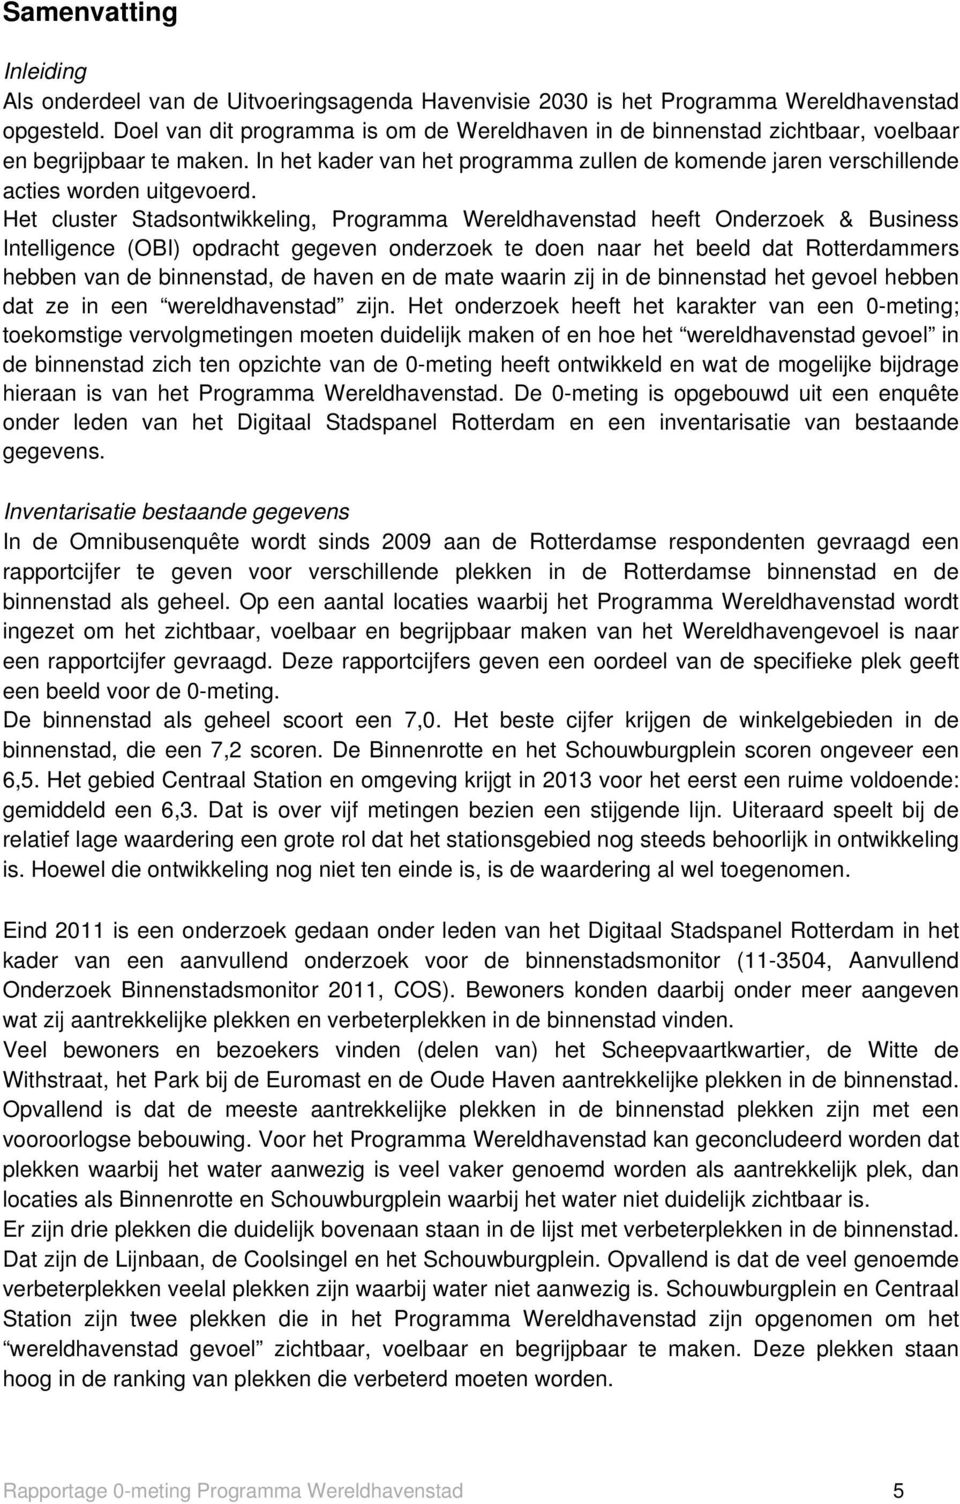 Het cluster Stadsontwikkeling, Programma Wereldhavenstad heeft Onderzoek & Business Intelligence (OBI) opdracht gegeven onderzoek te doen naar het beeld dat Rotterdammers hebben van de binnenstad, de